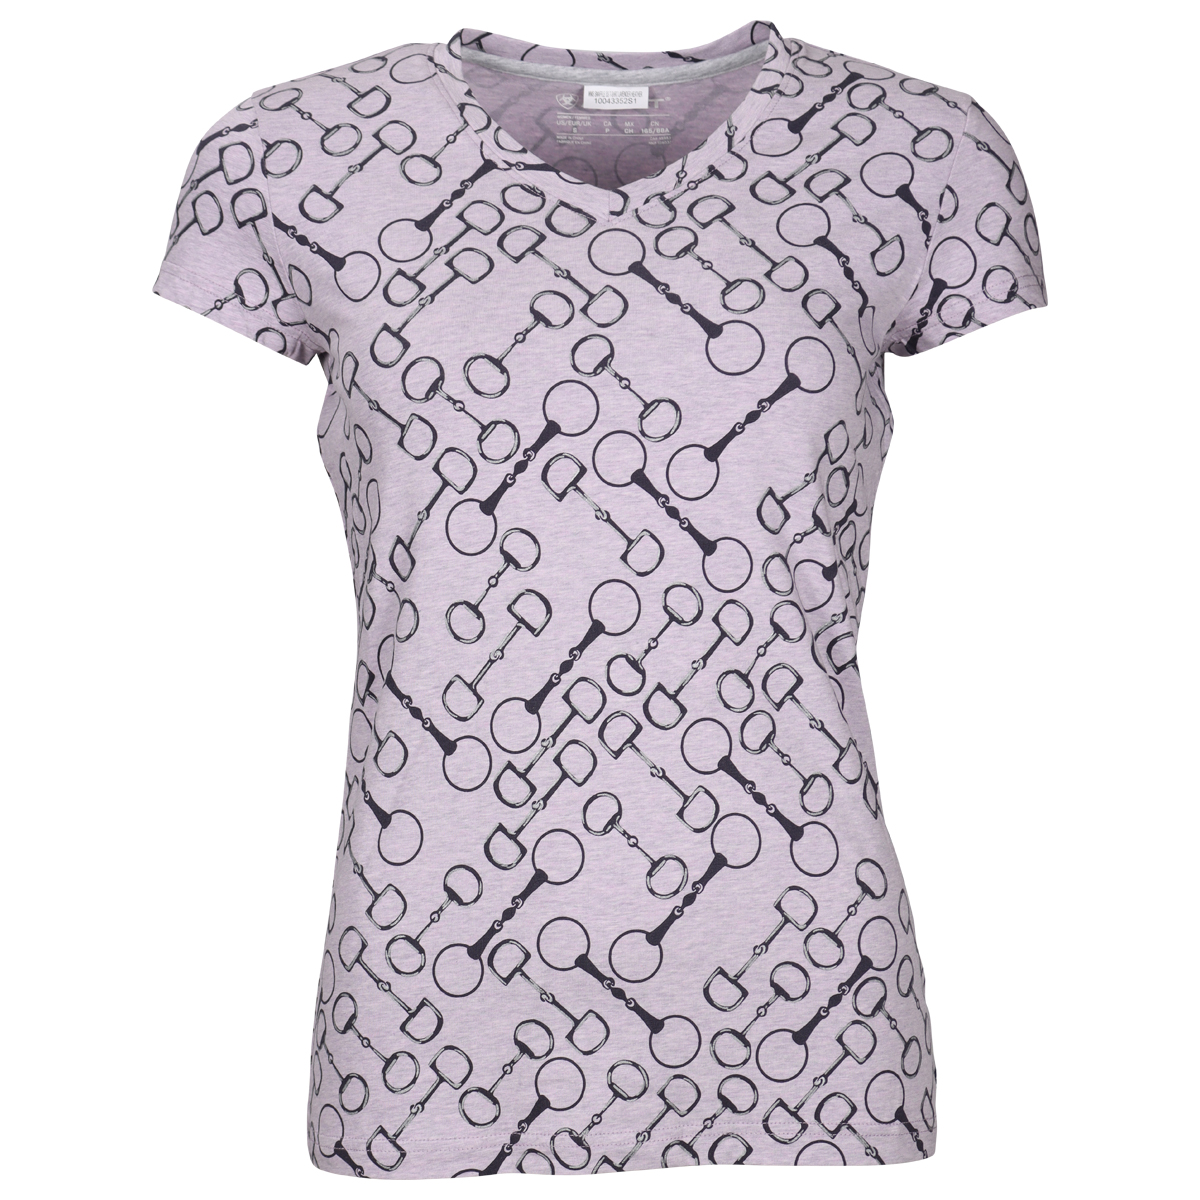 Shirt Ariat Snaffle Paars-grijs, M in paars/grijs